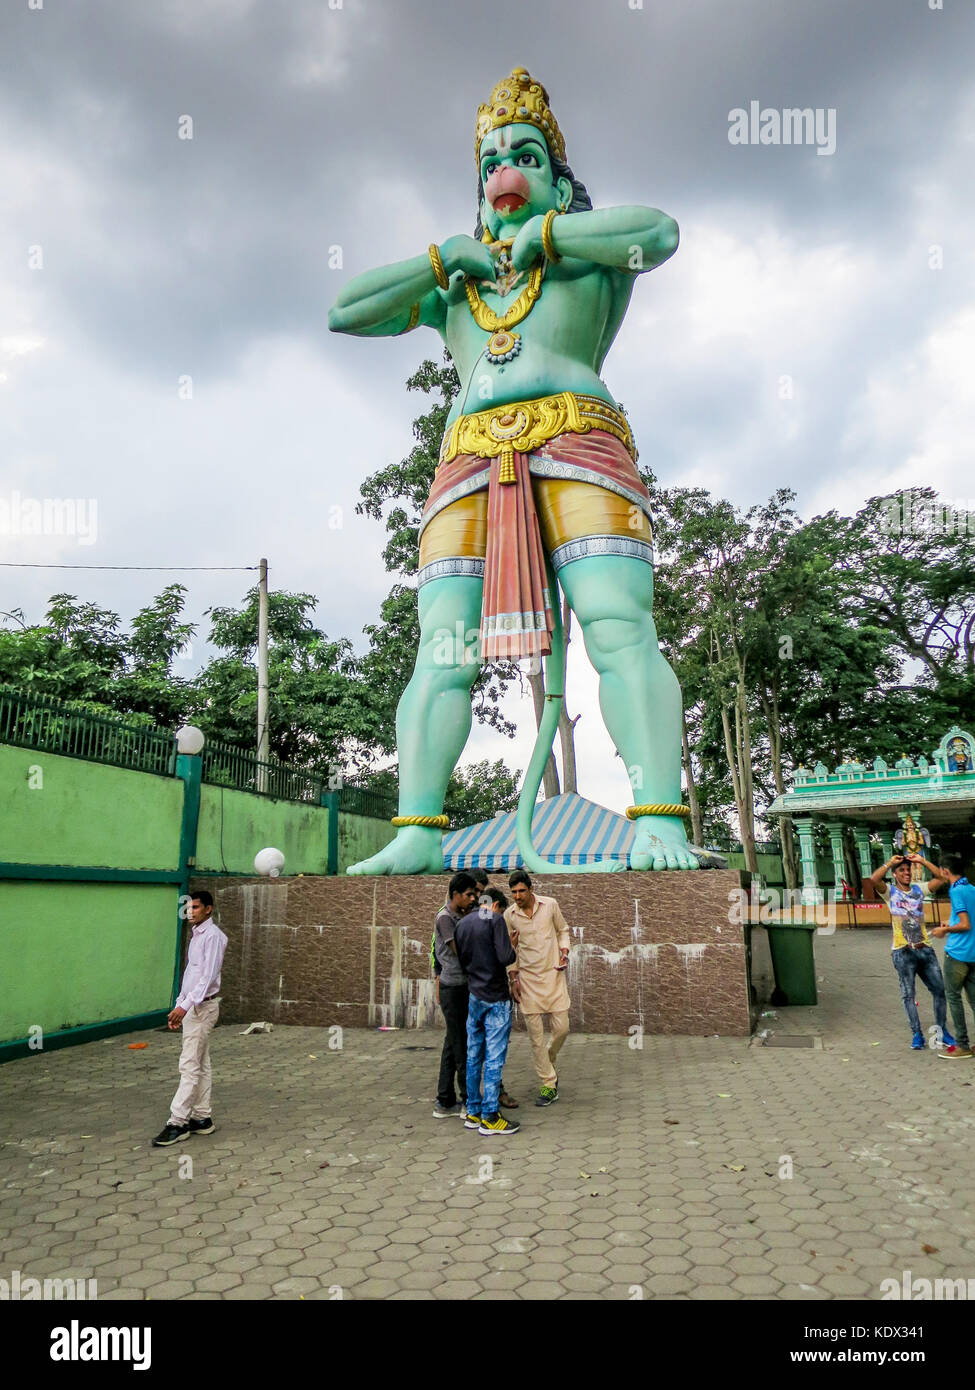 Herr Hanuman, Anhänger und Adjutant von Lord Rama, genannt der Affe Gottes ist ein 50" Statue am Eingang des Ramayana Höhle, Teil der Batu Höhlen Komplexe Stockfoto